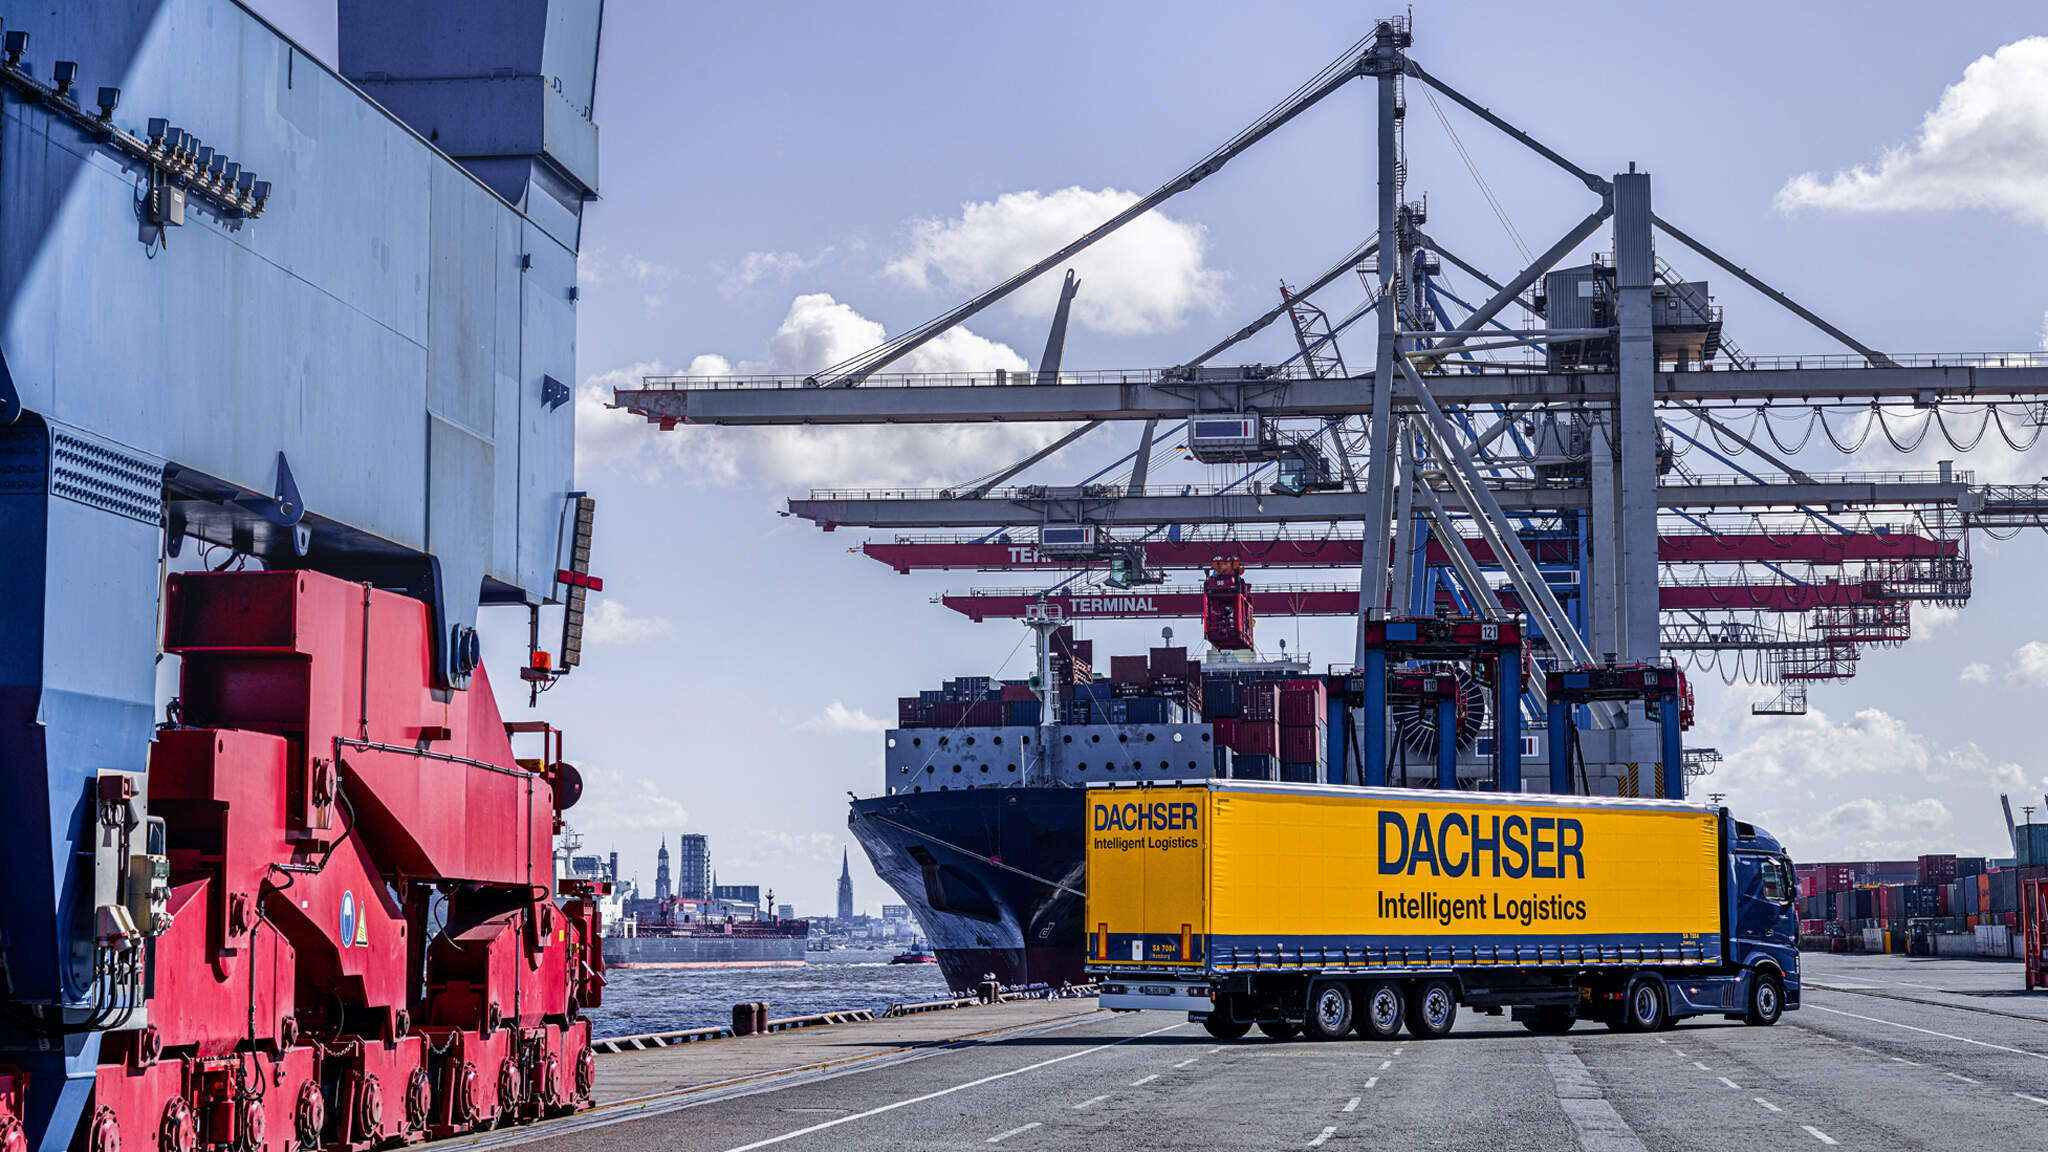 Nárůst objemů a vysoké sazby za přepravy způsobily rekordní růst společnosti DACHSER